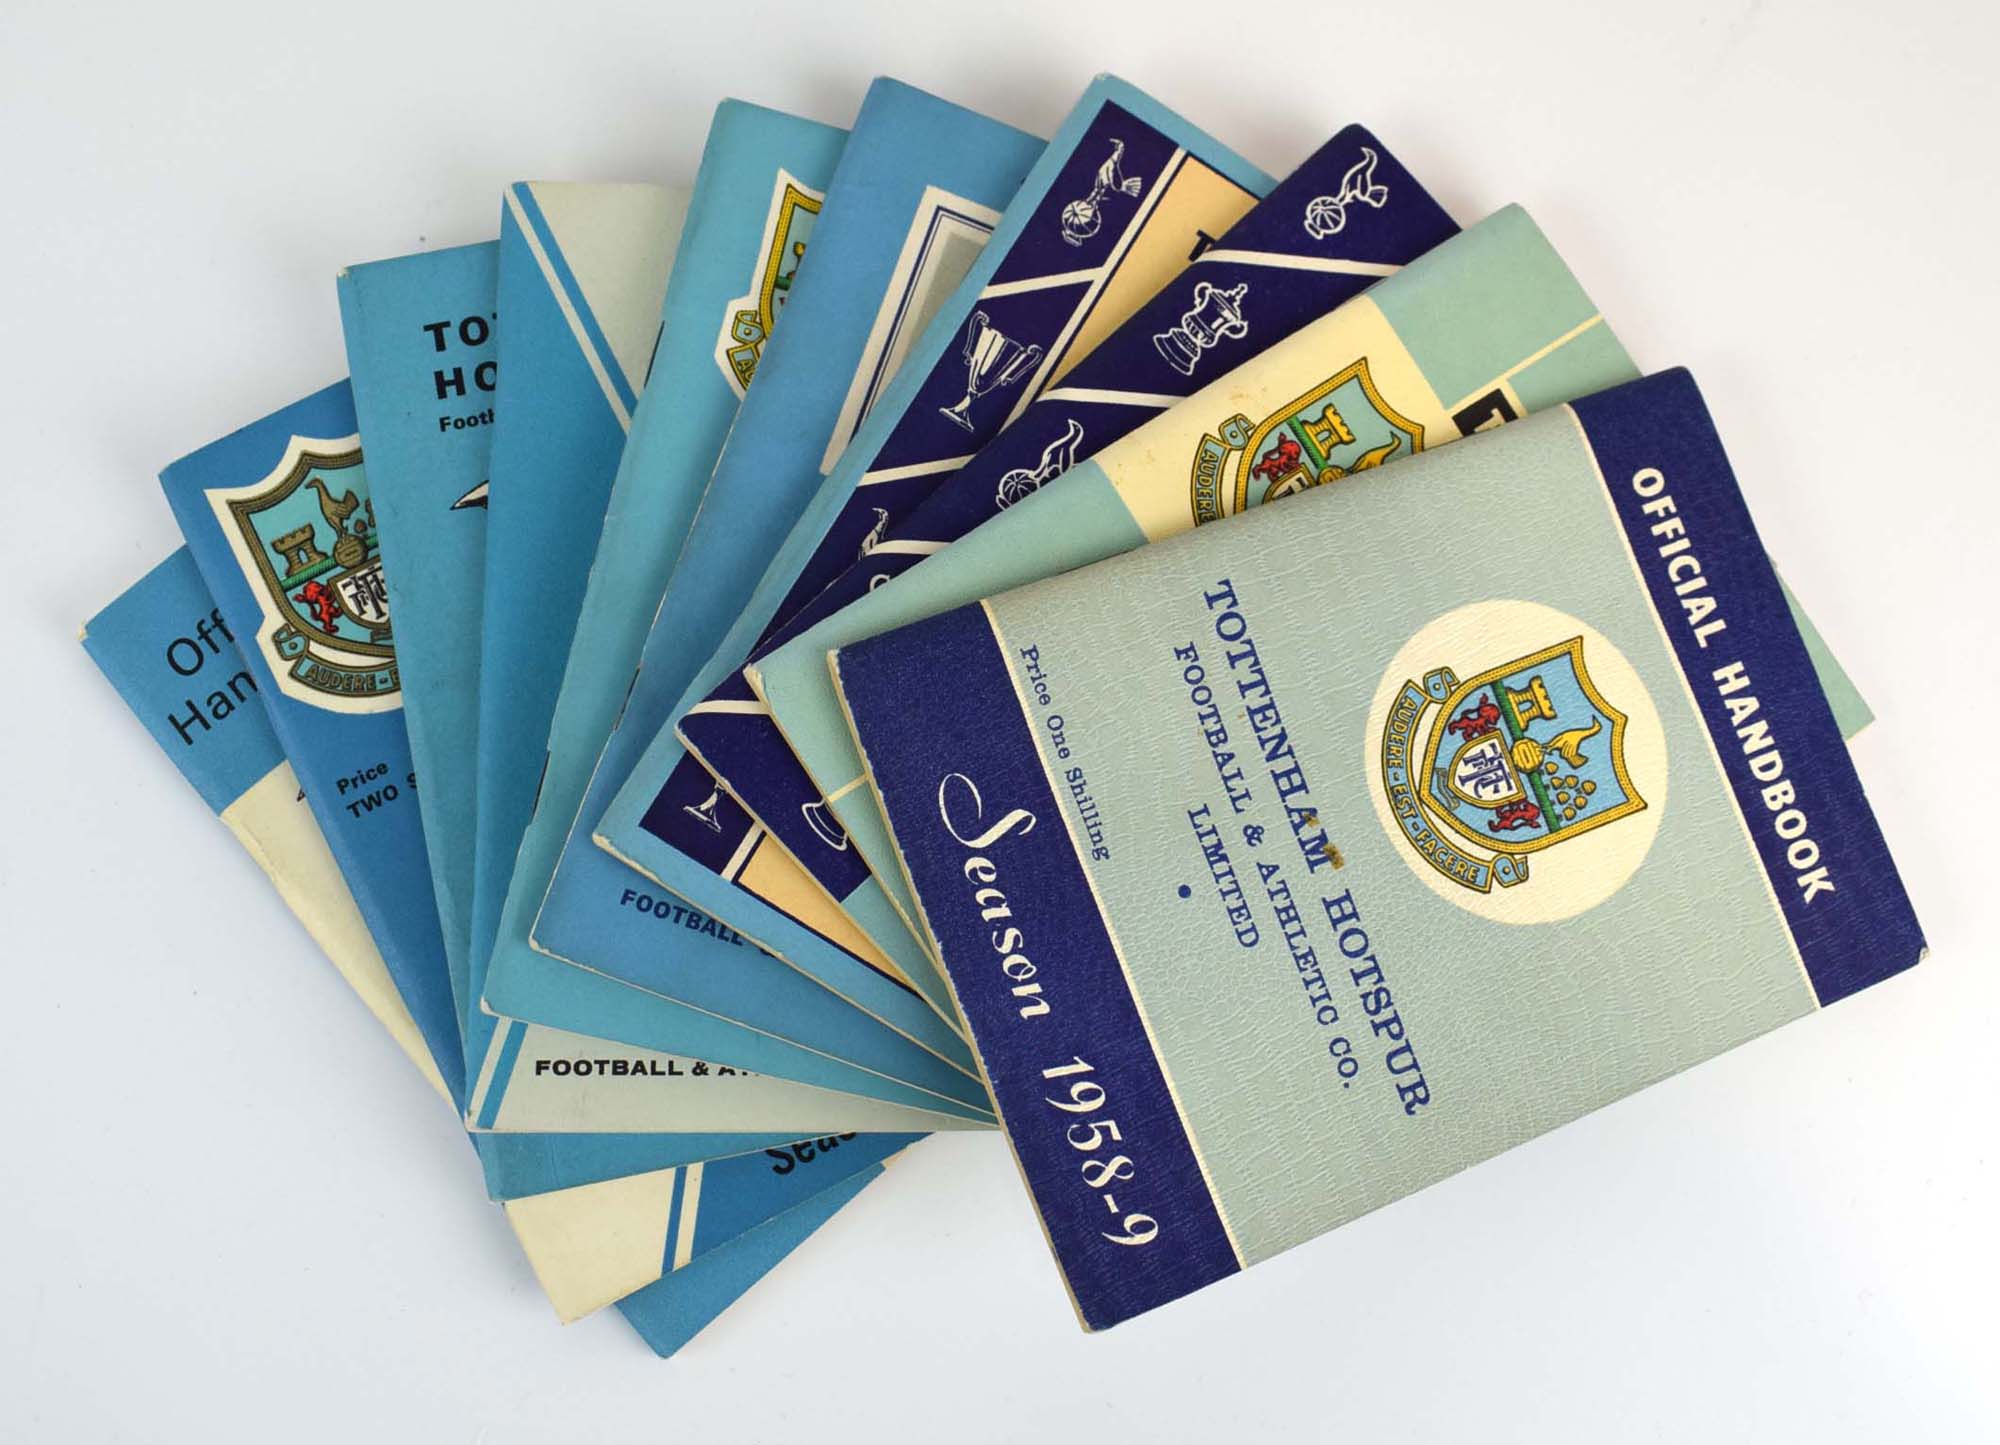 Tottenham Hotspurs: Twenty-three official handbooks dating from 1958-1982,